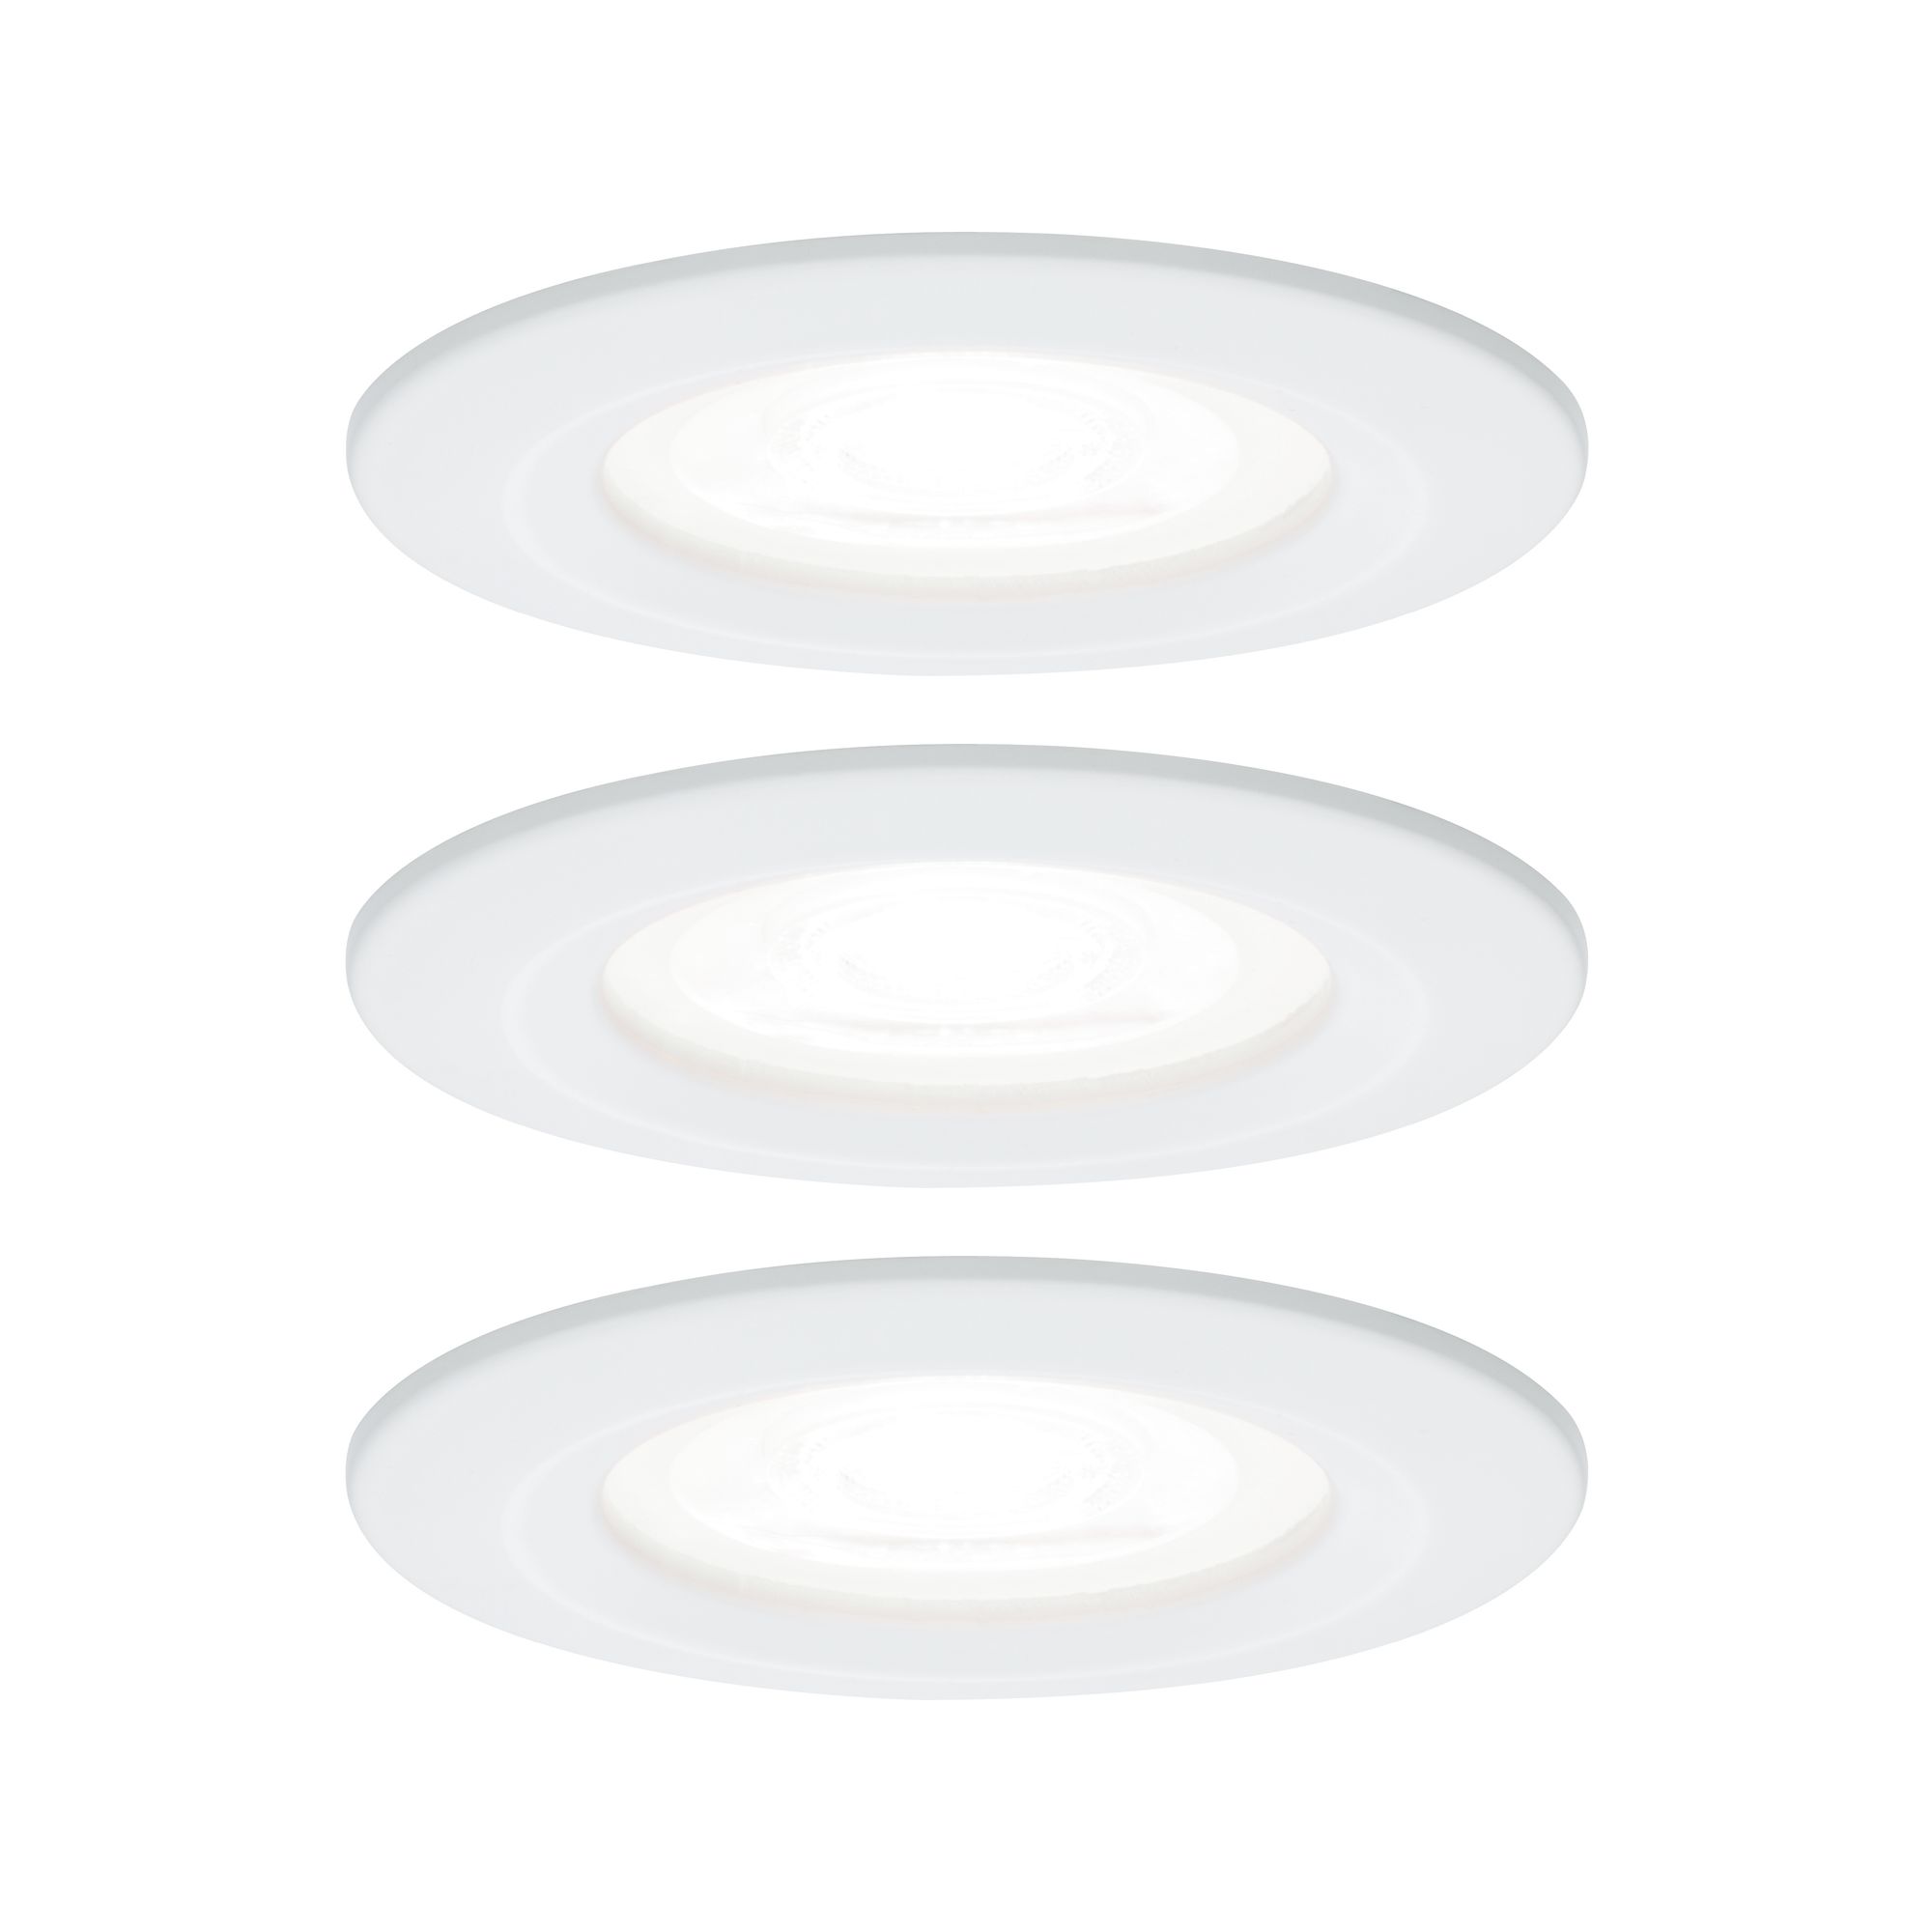 PAULMANN - Vestavné svítidlo LED Nova kruhové 3x6,5W GU10 bílá mat 4000K nevýklopné, P 92980